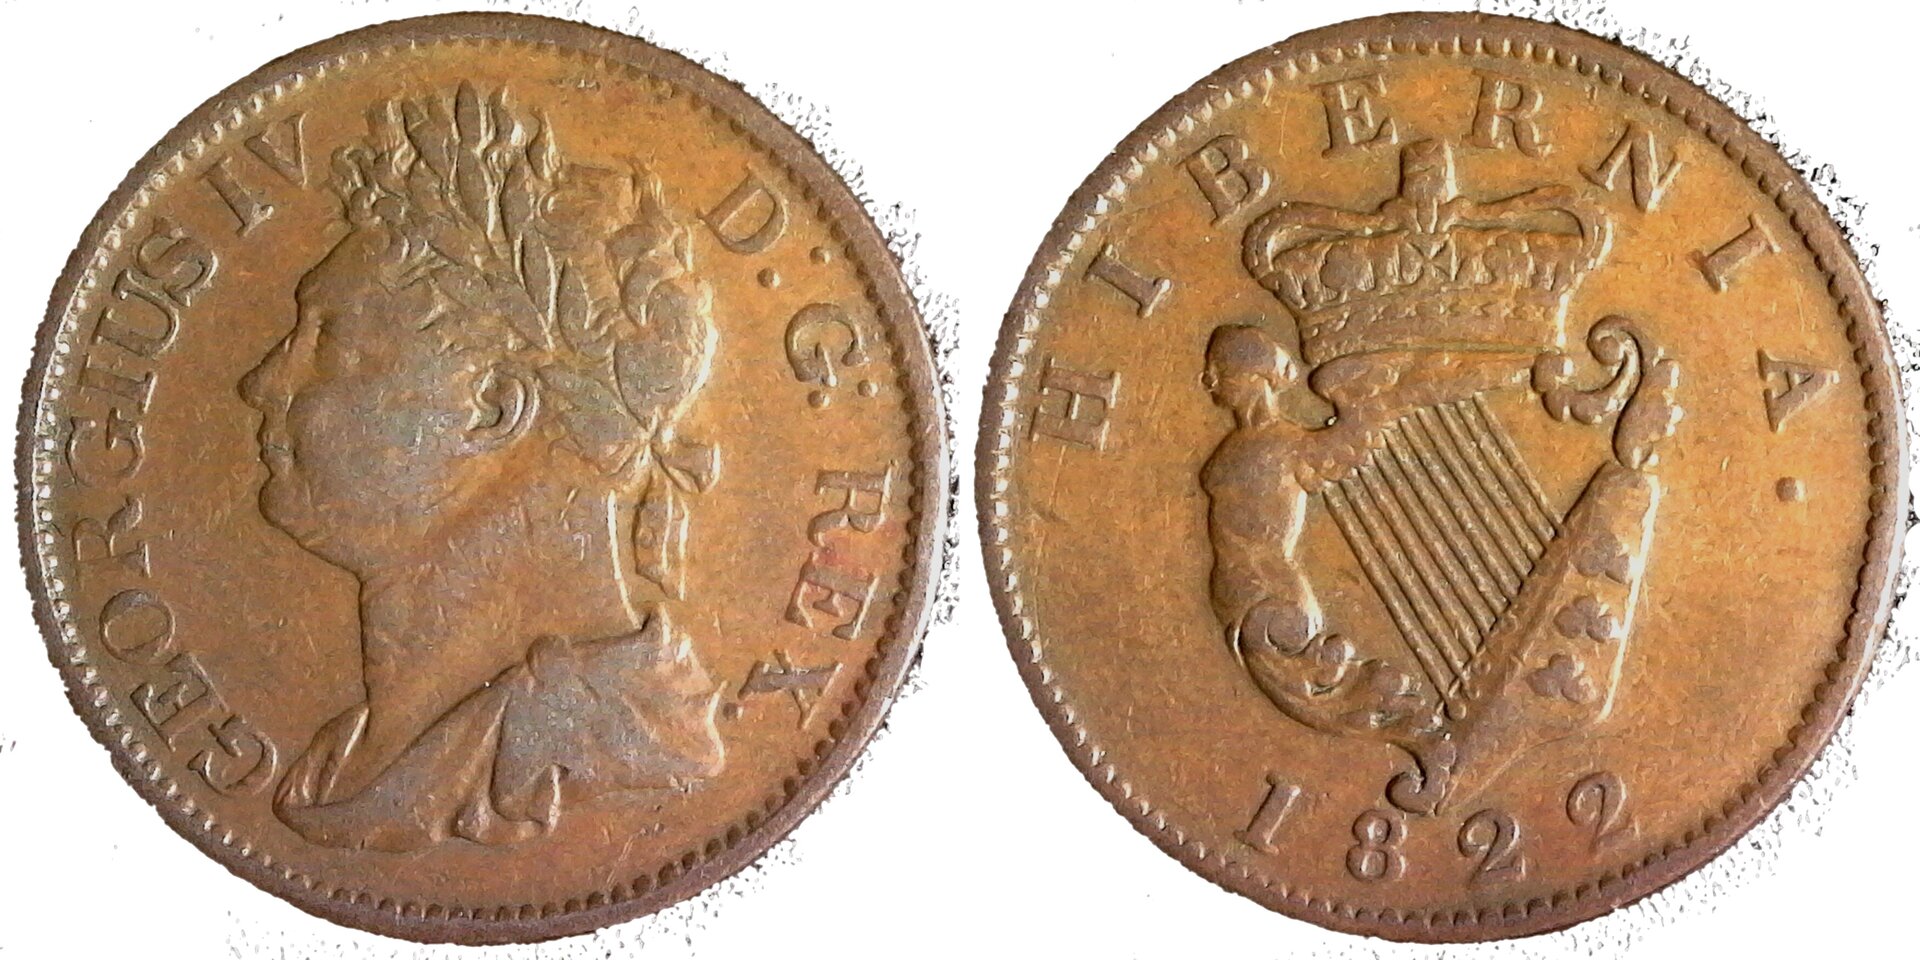 Ireland Half Penny 1822 obv-side-cutout.jpg